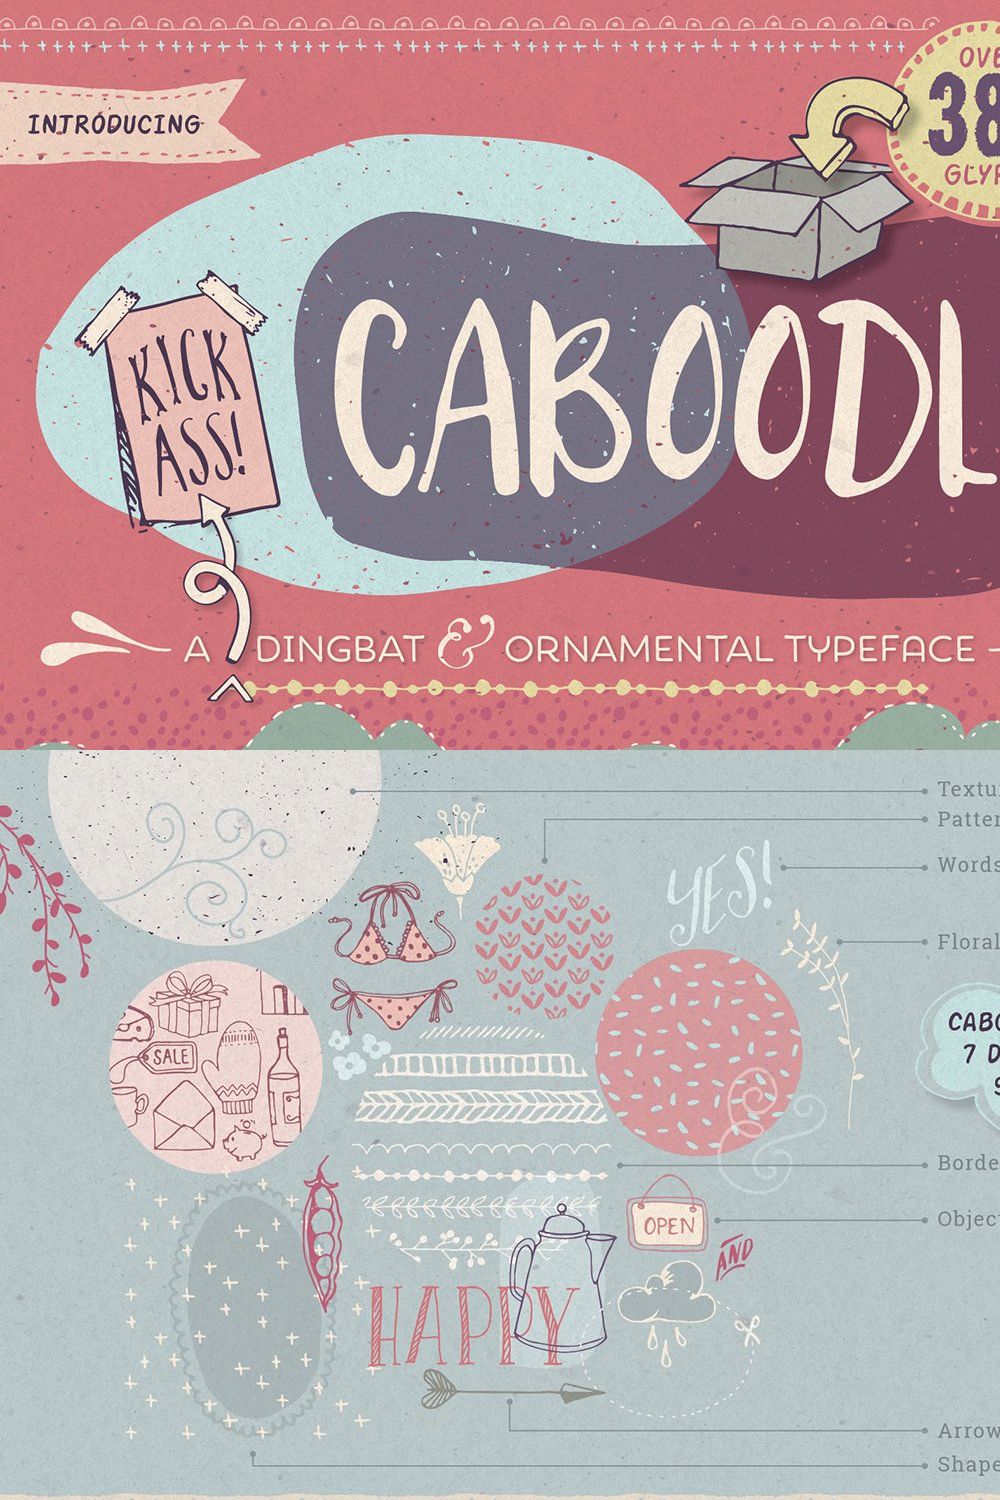 Caboodle dingbat typeface pinterest preview image.